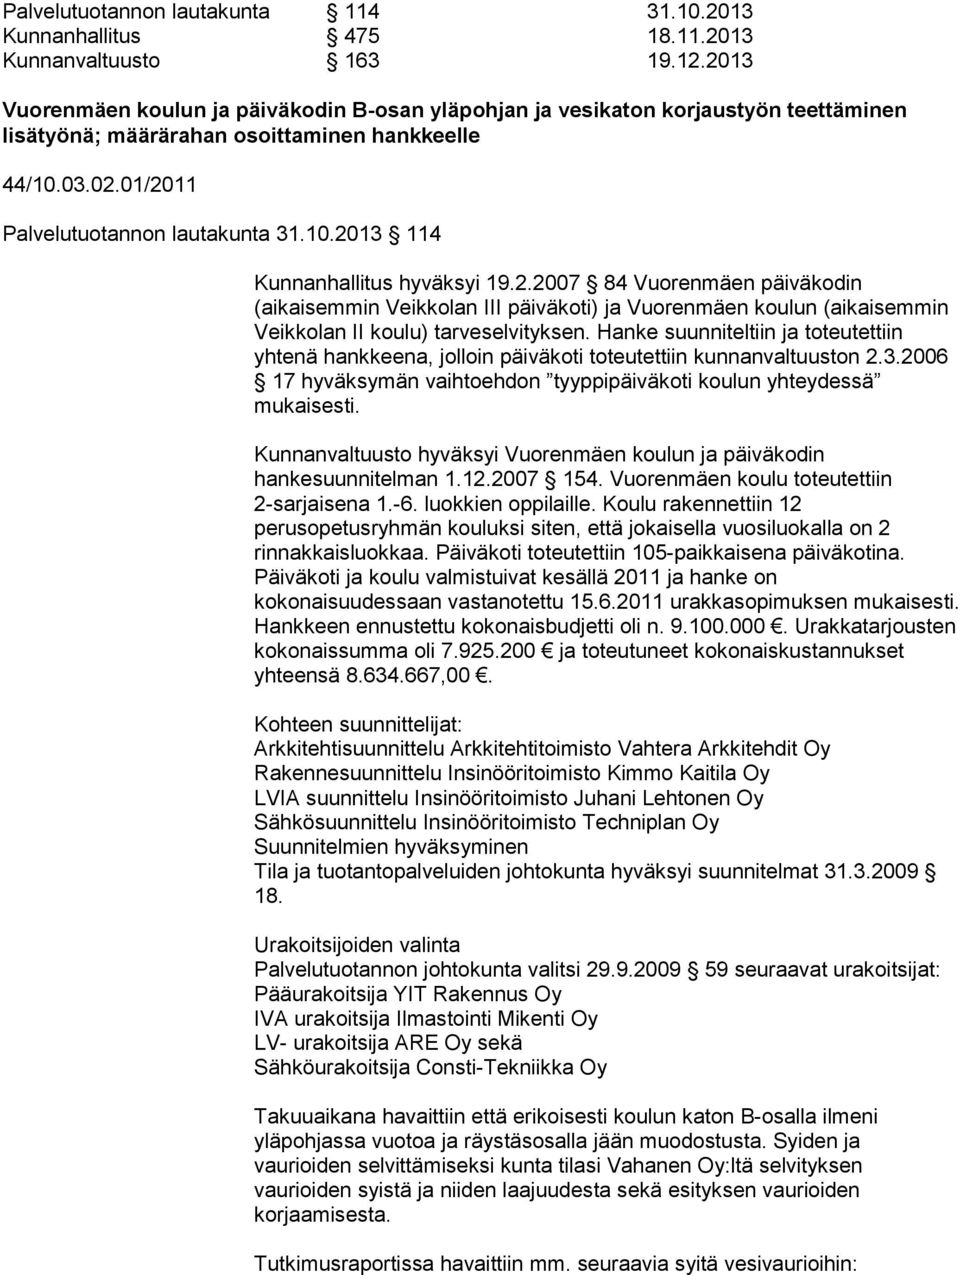 2.2007 84 Vuorenmäen päiväkodin (aikaisemmin Veikkolan III päiväkoti) ja Vuorenmäen koulun (aikaisemmin Veikkolan II koulu) tarveselvityksen.